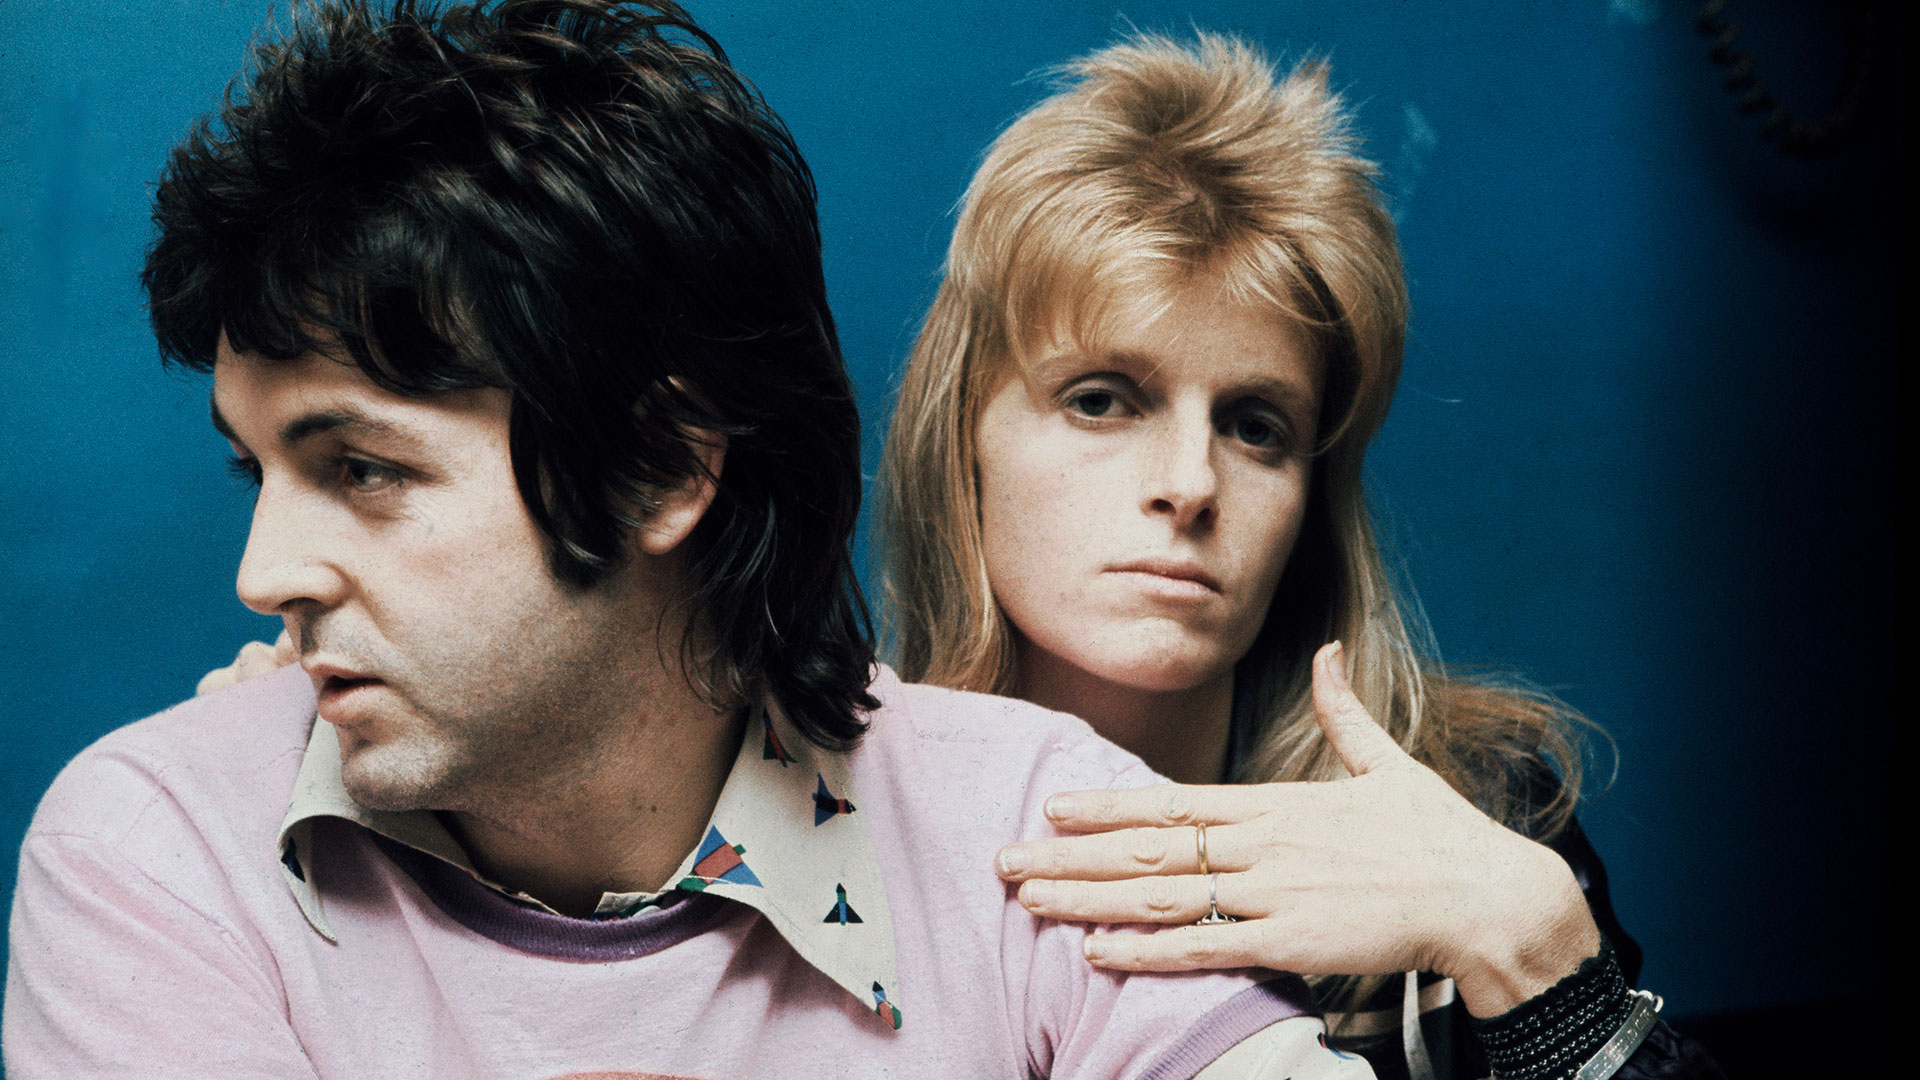 Paul McCartney y Linda McCartney integraron Wings. Ella fue denostada por sus escasas habilidades musicales. Pero tras la disolución del grupo siguió integrando cada banda de Paul (Photo by Michael Putland/Getty Images)